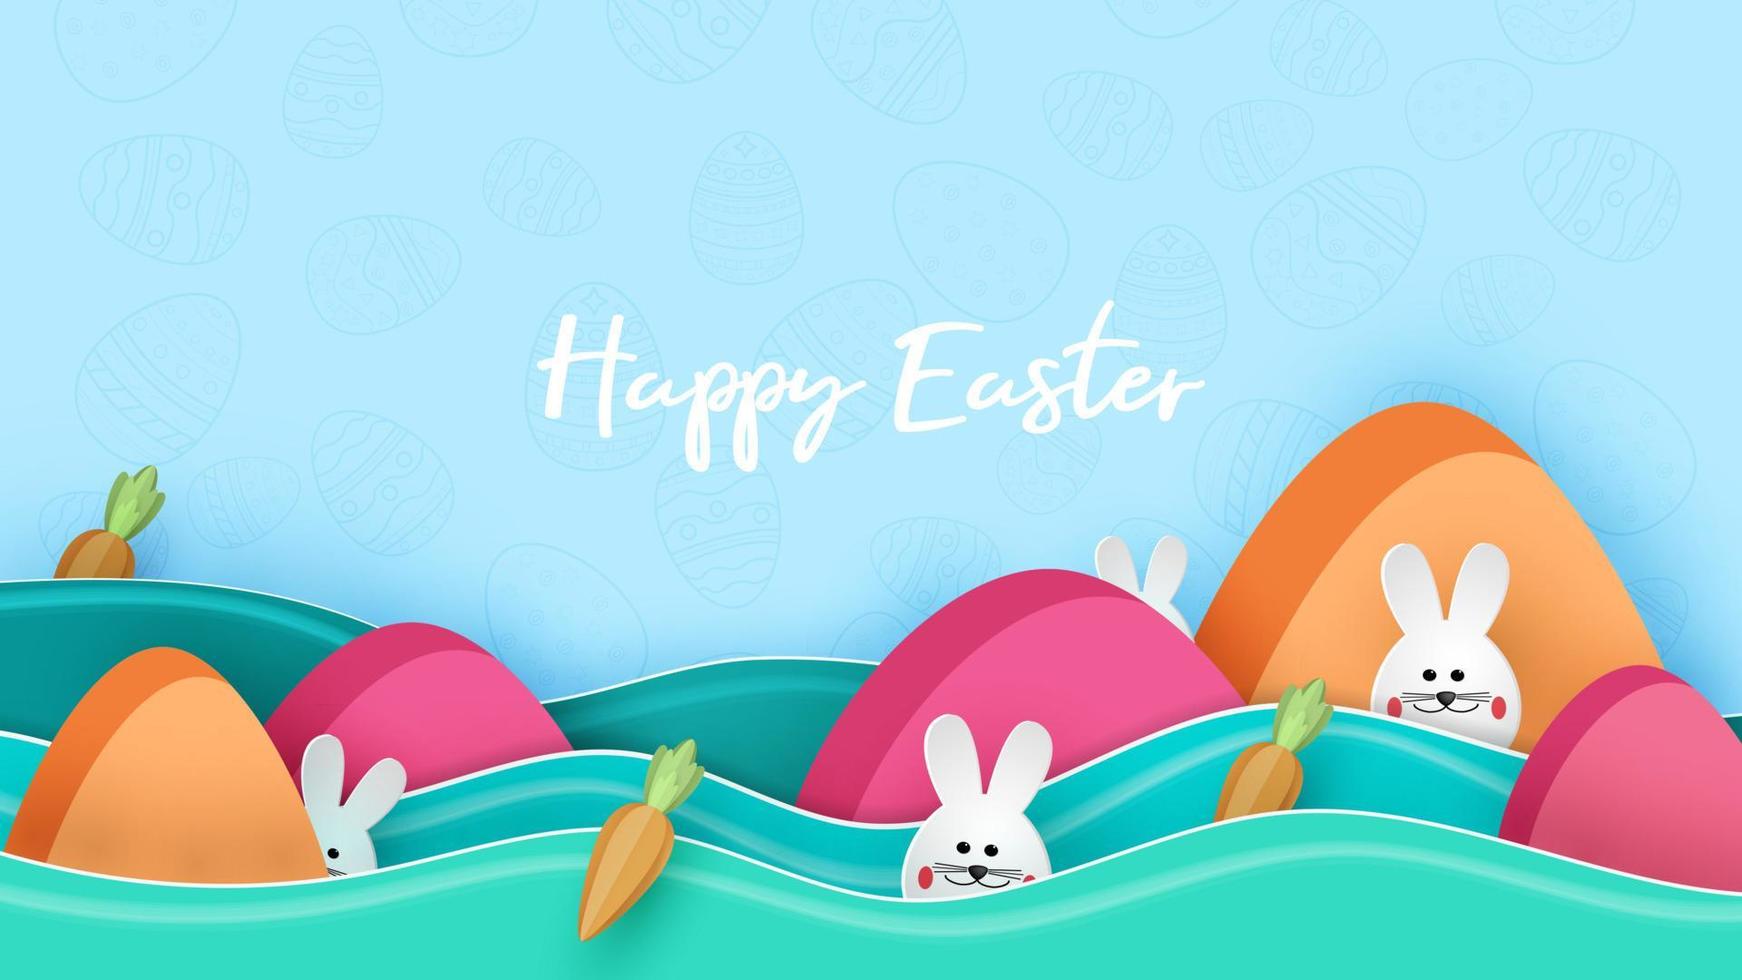 gelukkige paasdag in papierkunststijl met konijntje en eieren vectorillustratie vector